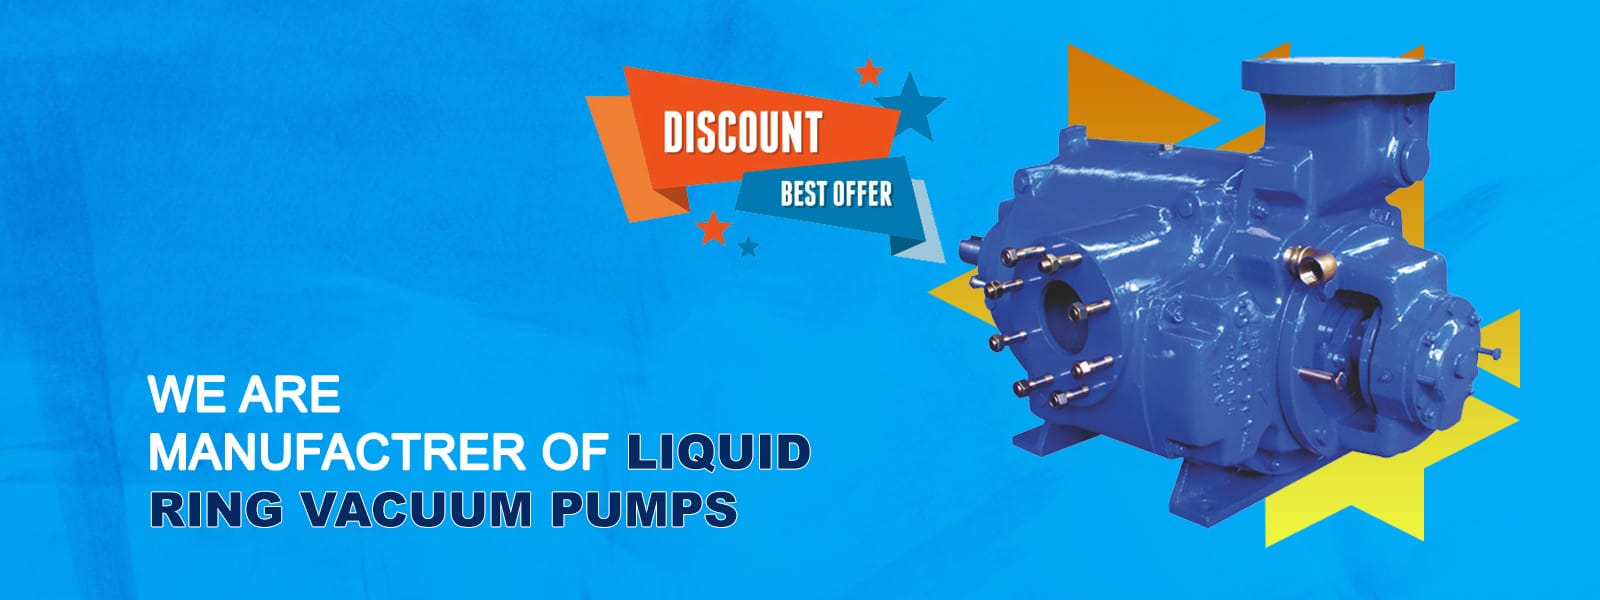 Liquid Rings Vacuum Pumps Manufacturer in Gujarat, India.